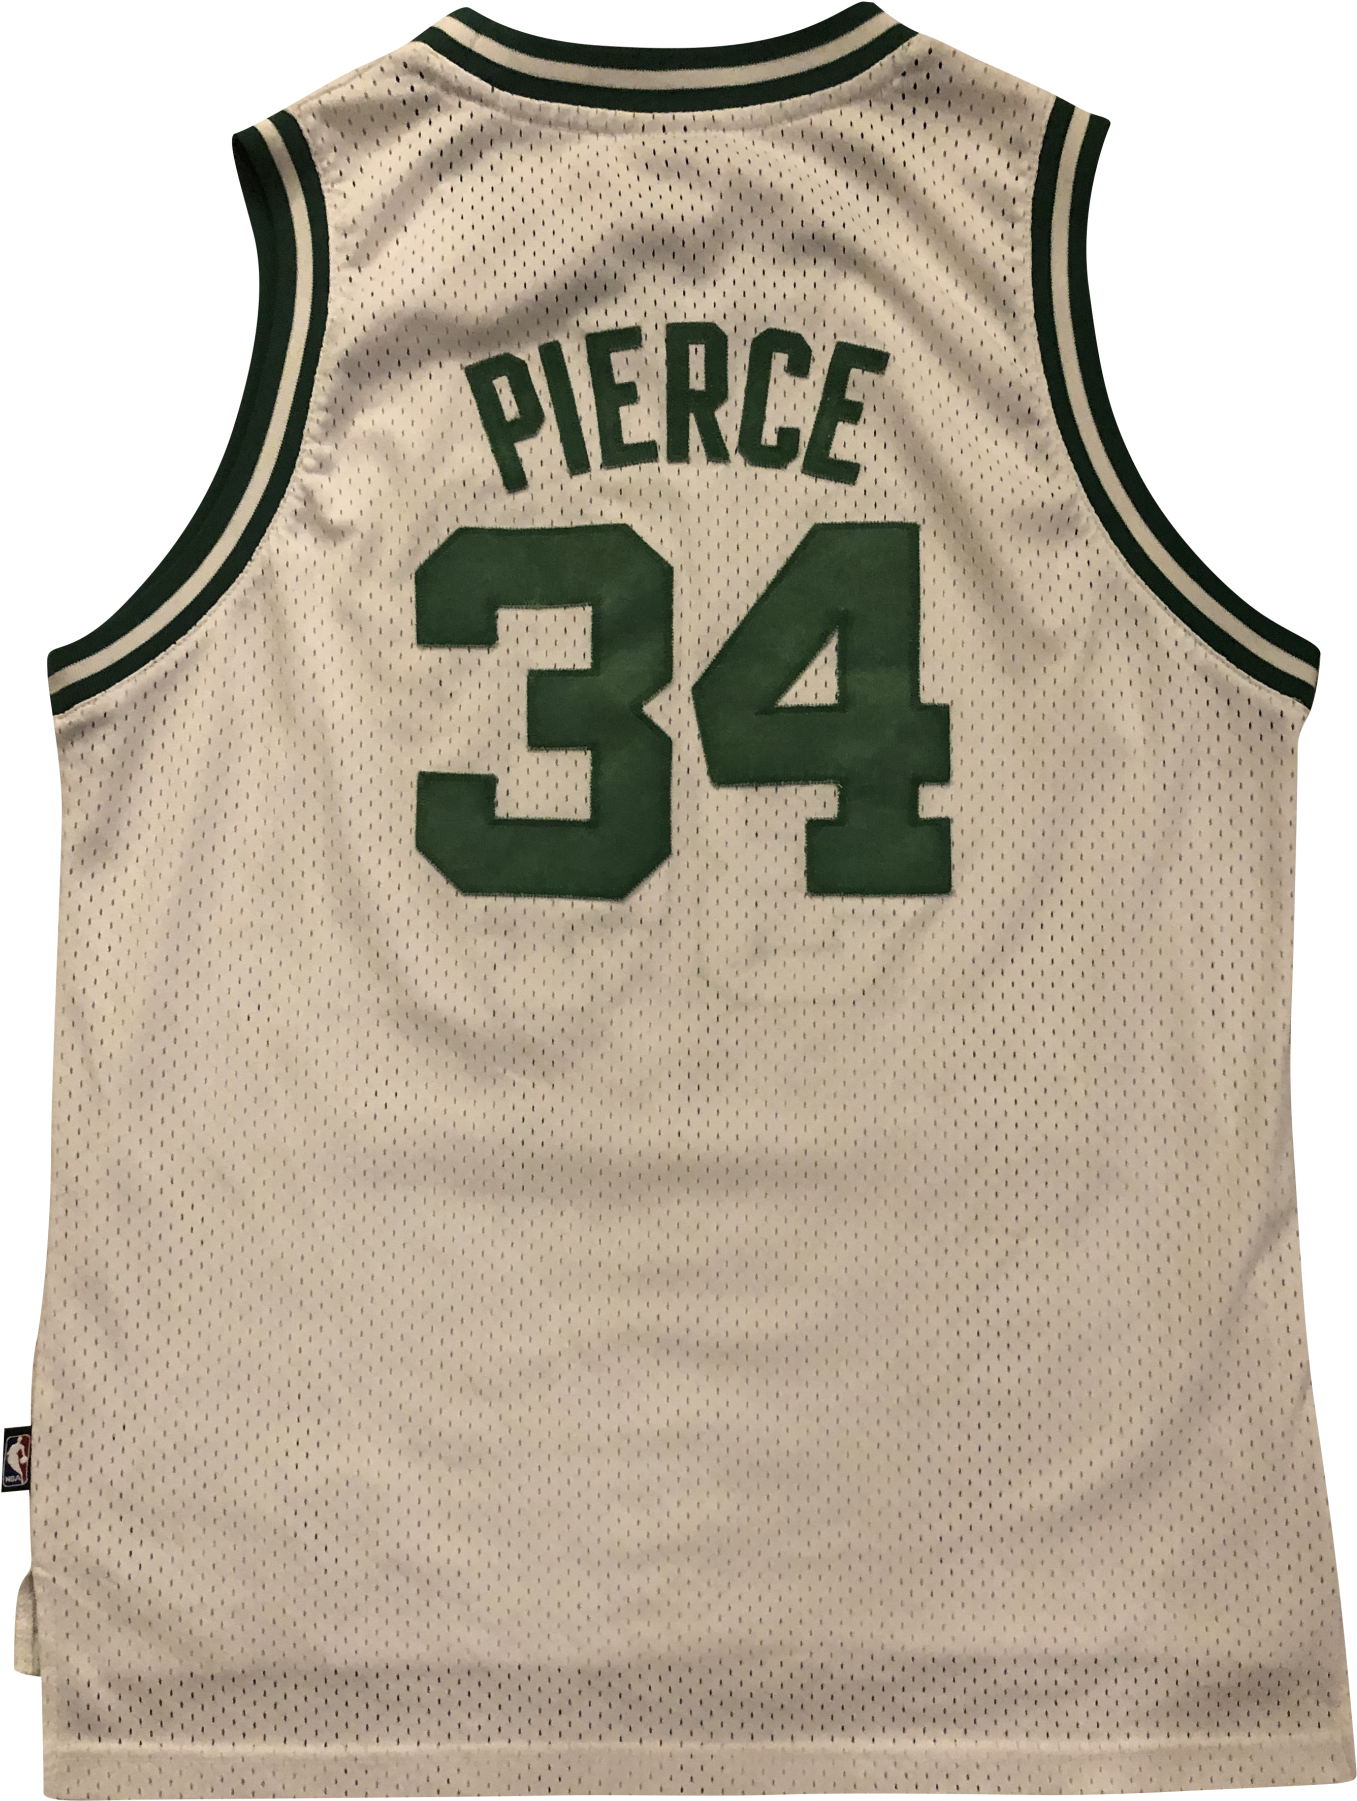 Pierce34 Basketball Jersey PNG image